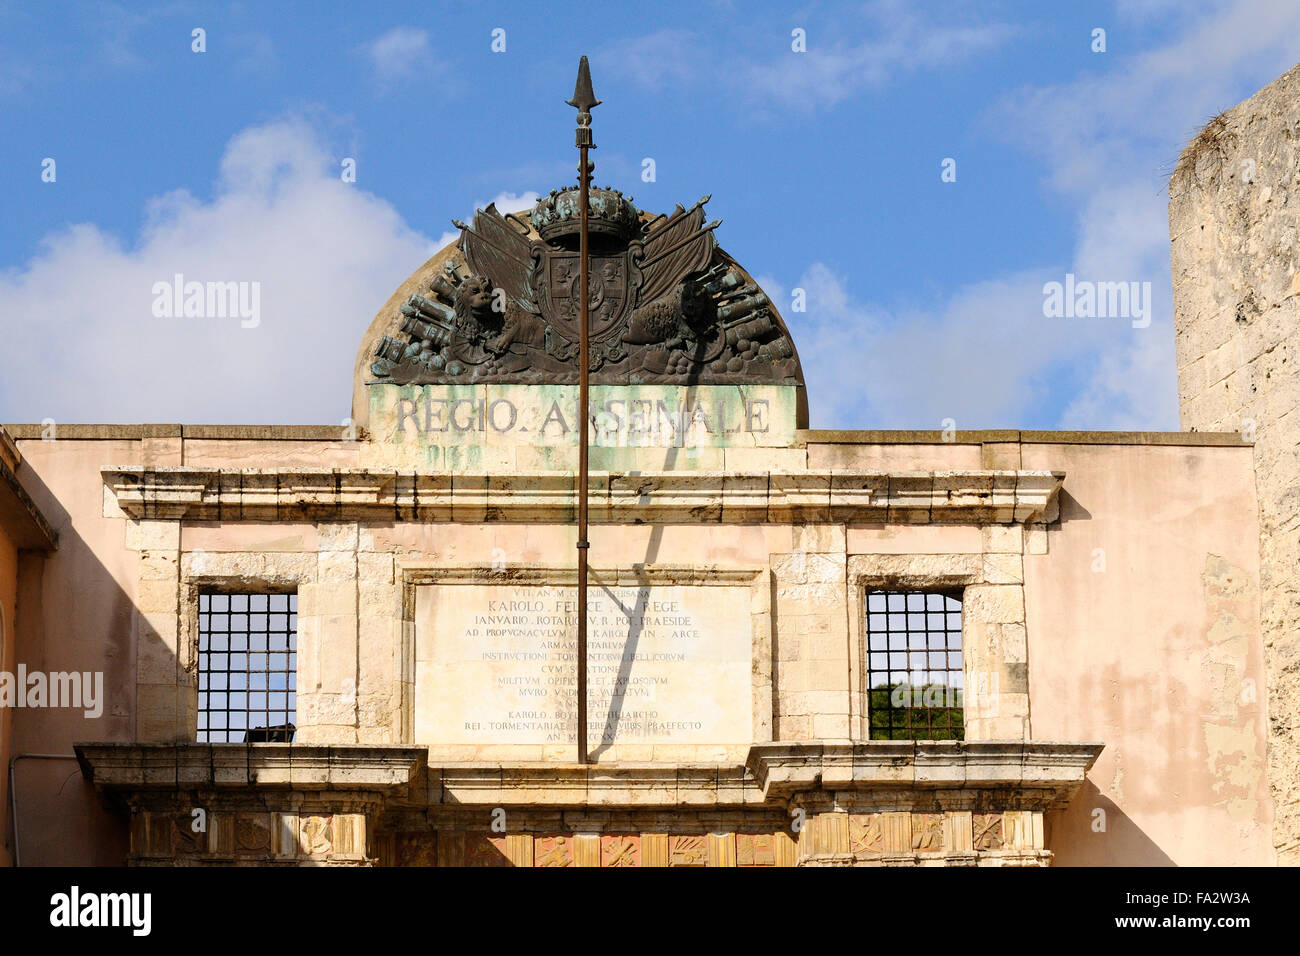 the facade of Regio Arsenale ,Cagliari, Sardinia, Italy Stock Photo